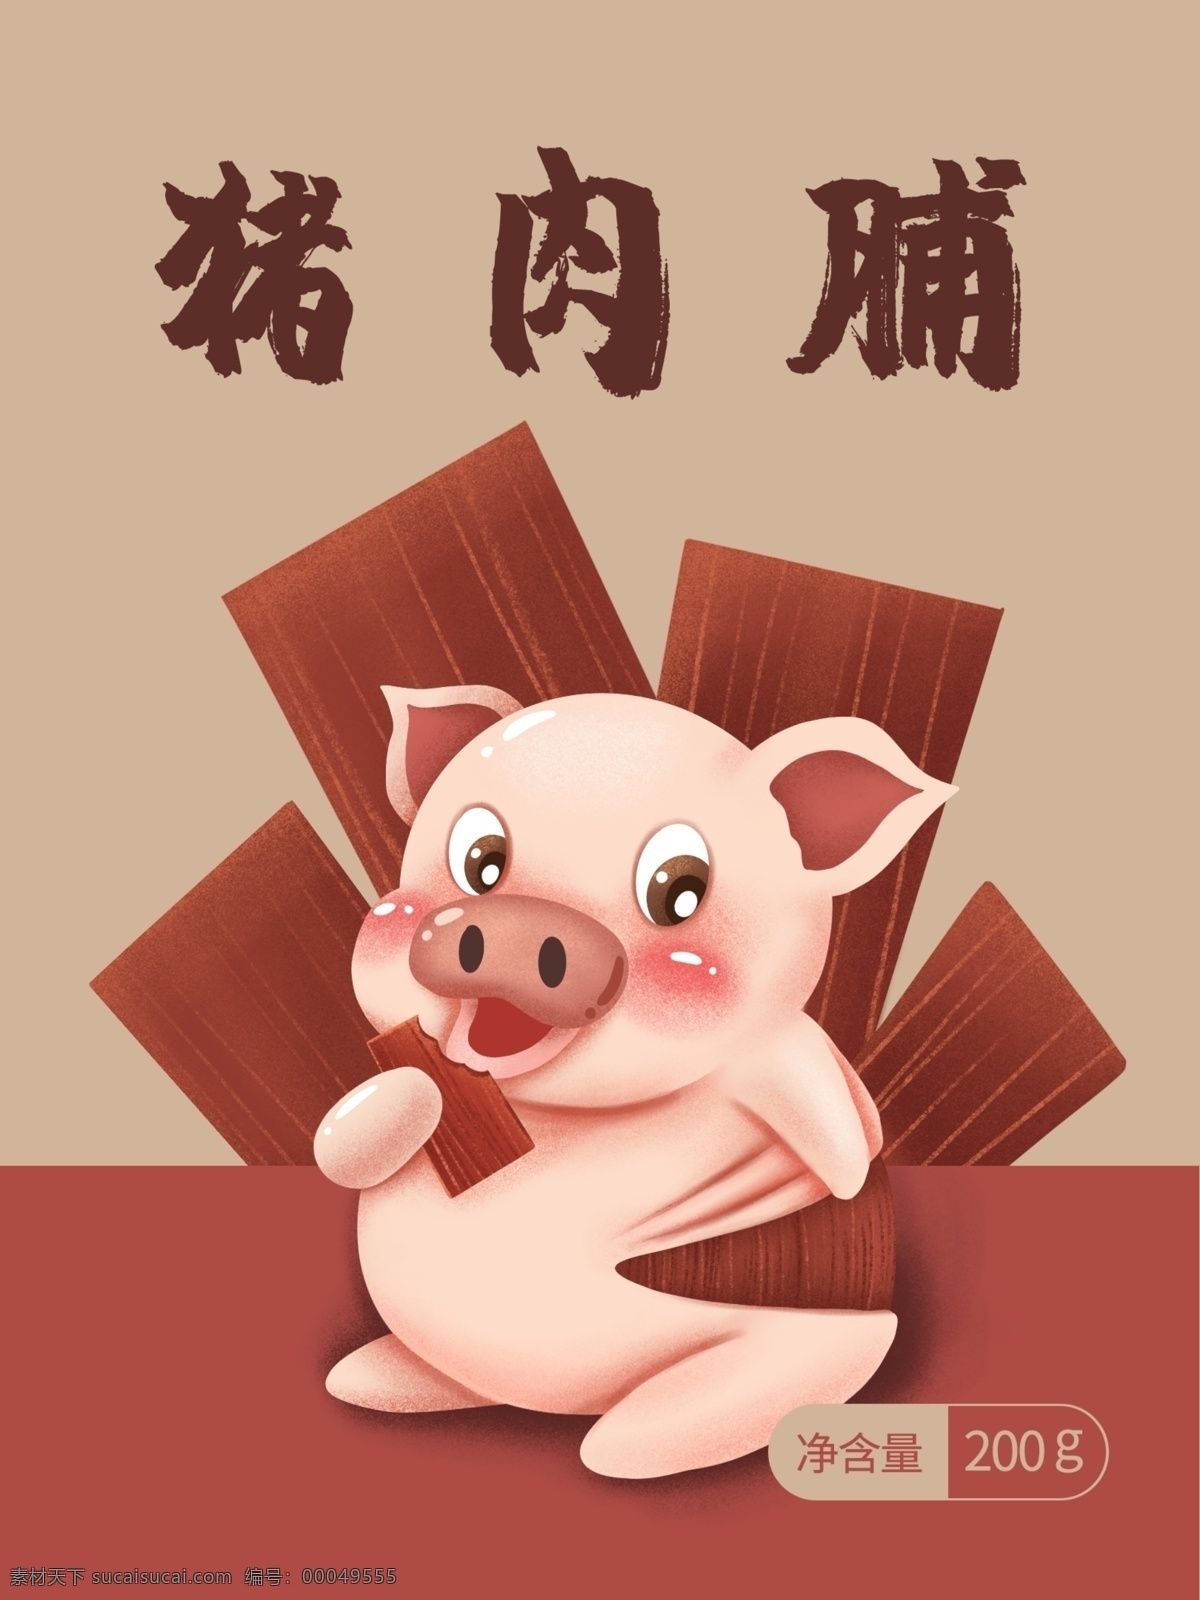 猪 肉脯 包装 小 宣传 自己 做 猪肉脯 零食包装 食品包装 肉类零食 肉脯包装 猪肉 小猪 插画包装